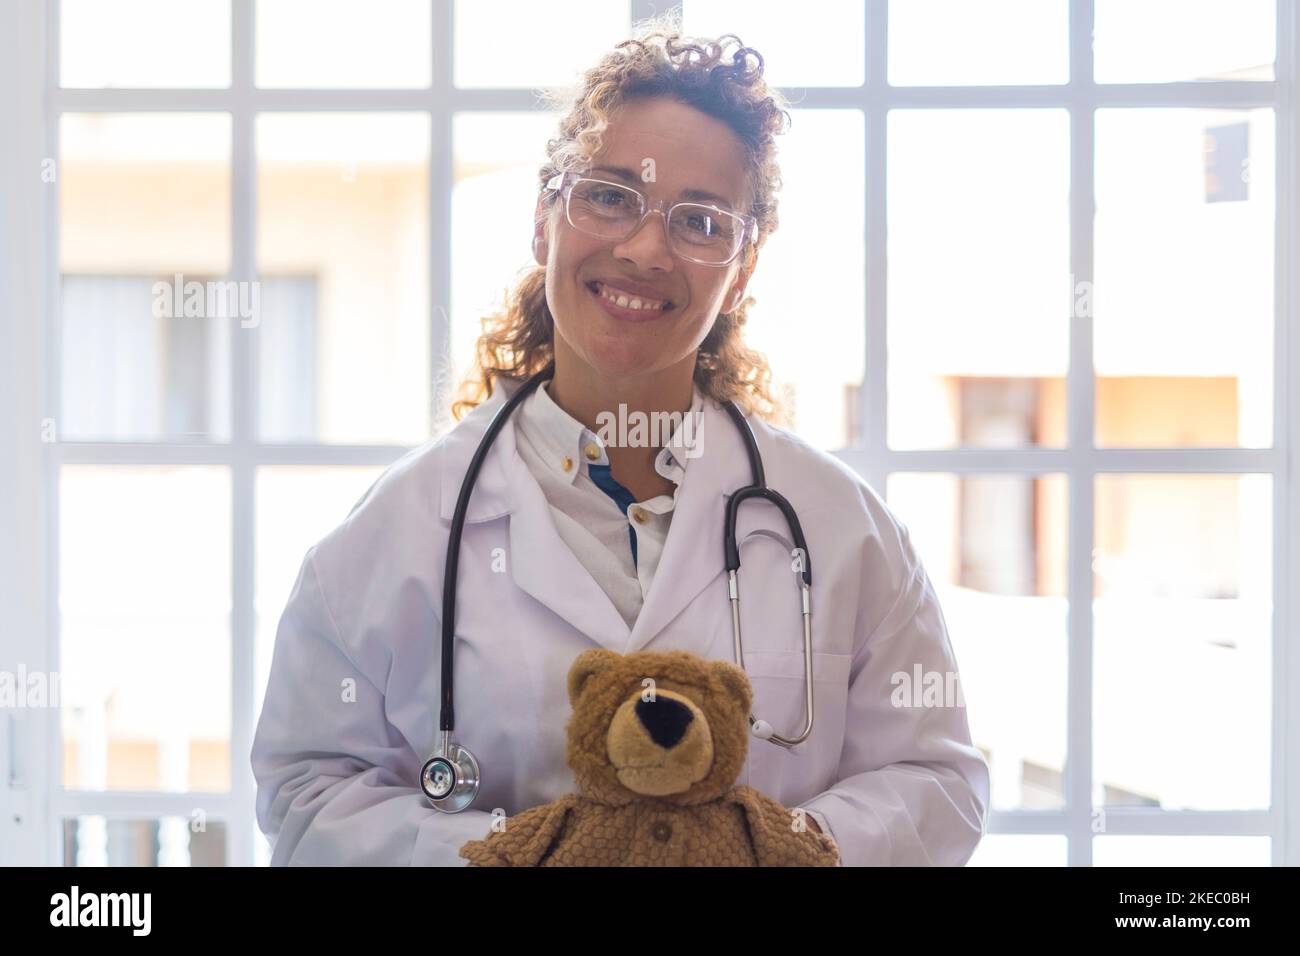 Portriat de jeune femme médecin en uniforme et stéthoscope tenant l'ours en peluche contre la fenêtre à la clinique. Professionnel de la santé ou professionnel de la santé confiant dans les lunettes à l'hôpital Banque D'Images